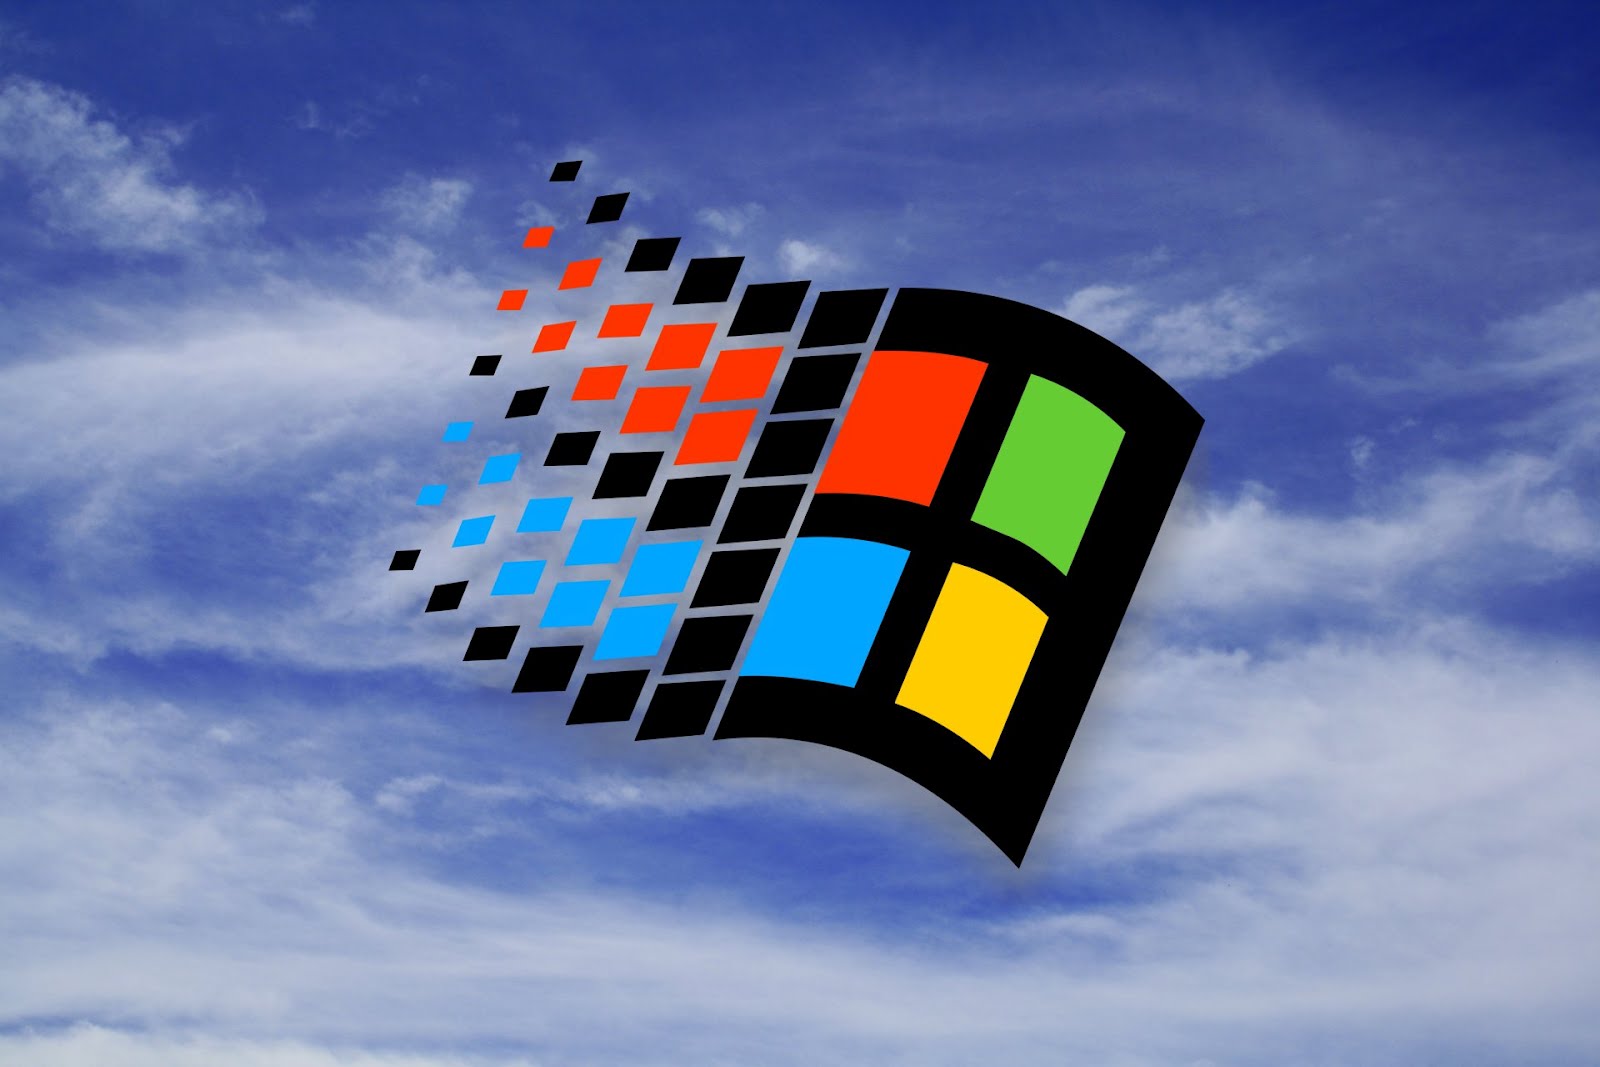 Cinci wallpapere cu Windows 98 | Wallpapere Imagini Desktop Poze ...